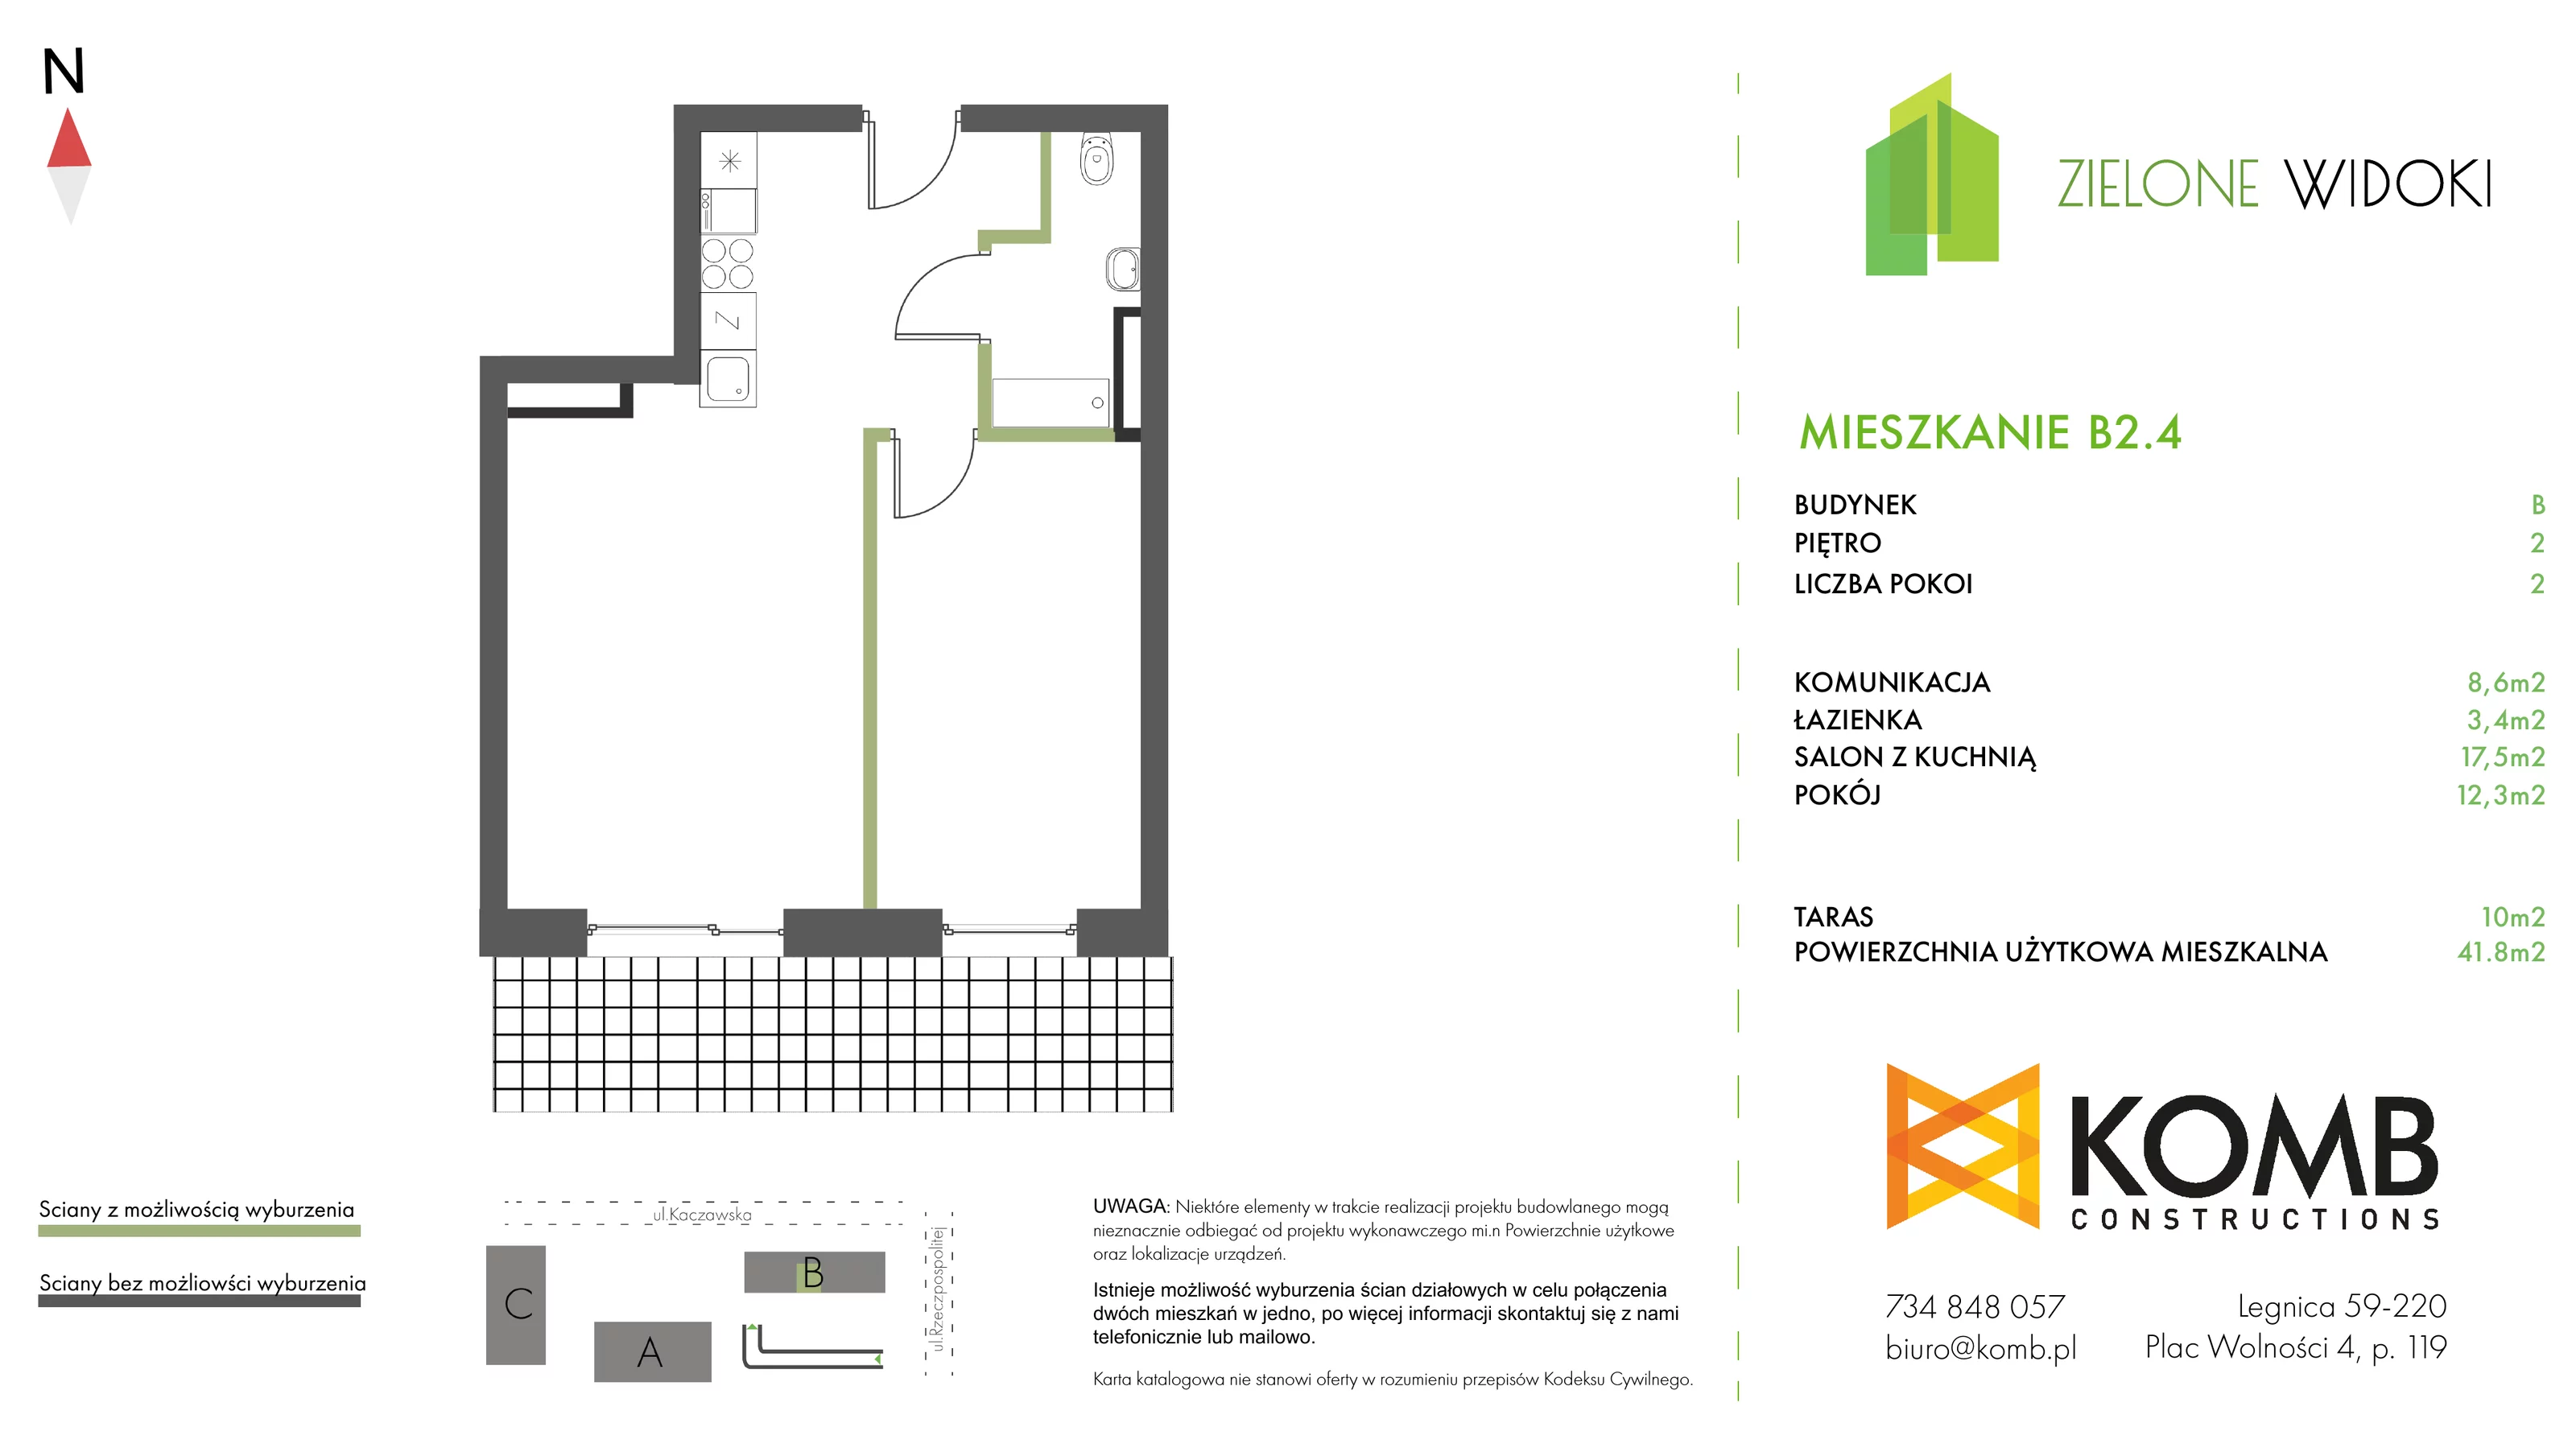 Mieszkanie 41,80 m², piętro 2, oferta nr B2.4, Zielone Widoki, Legnica, Bielany, al. Rzeczypospolitej 23